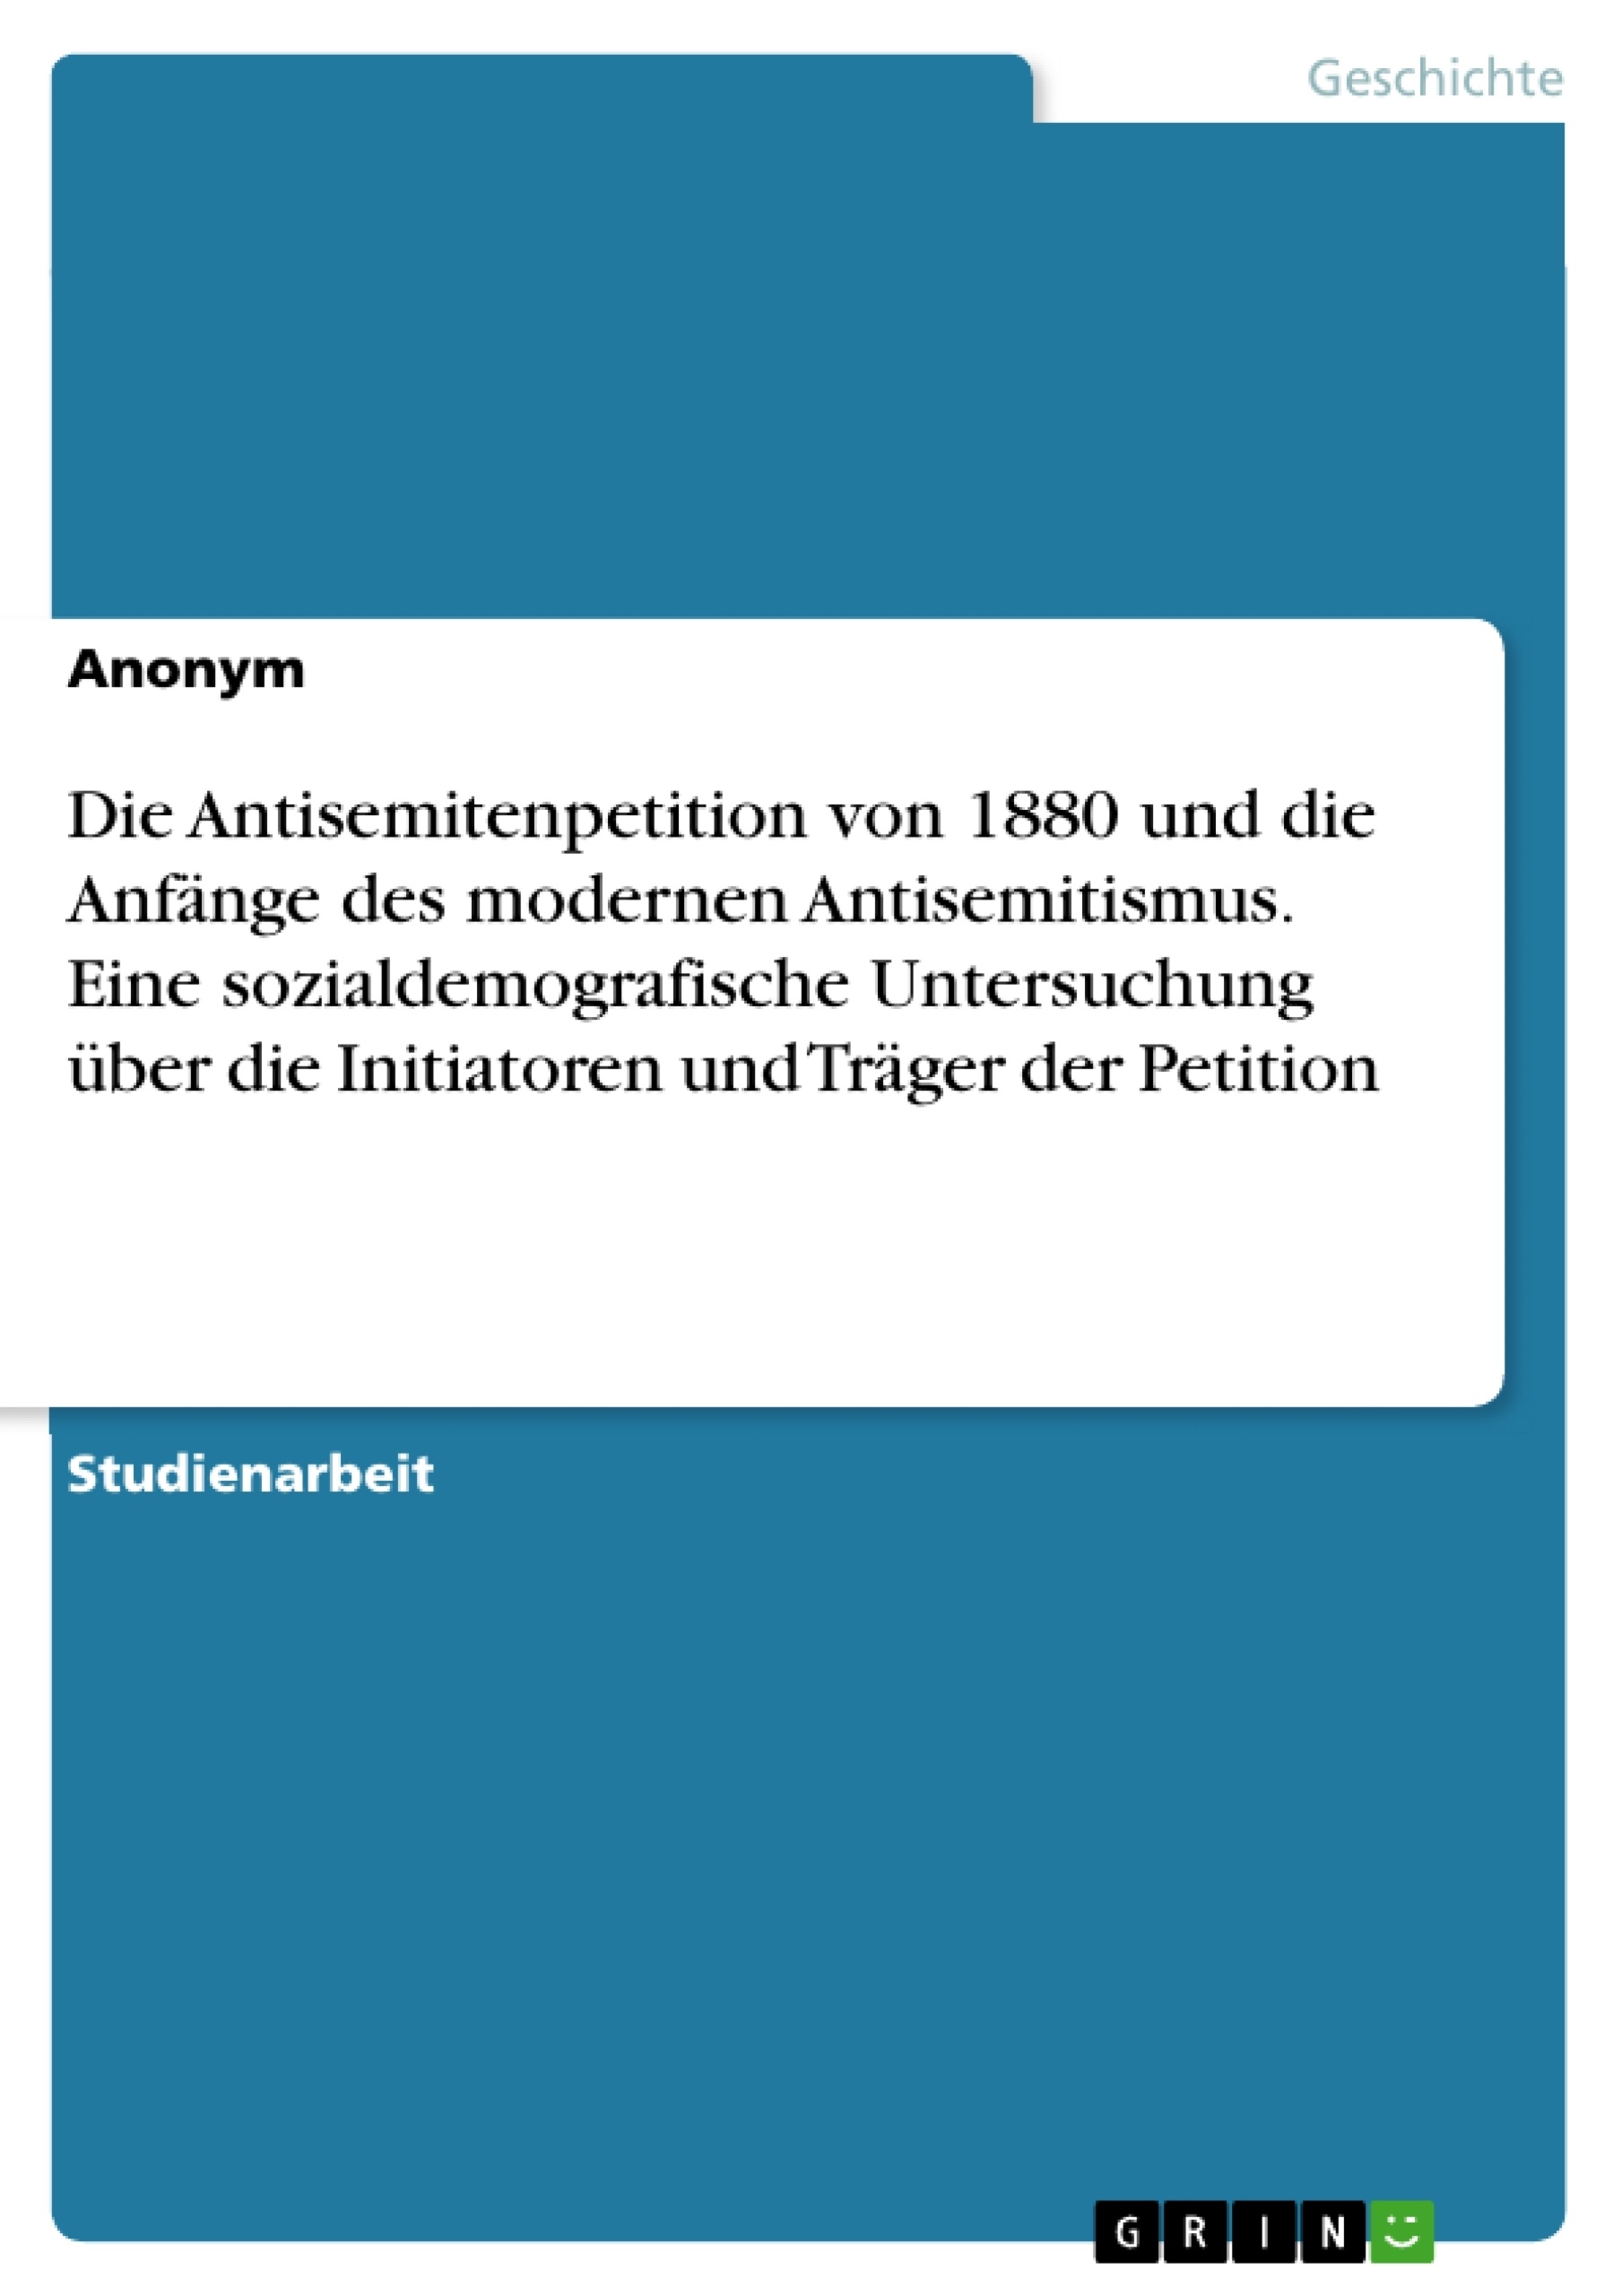 Title: Die Antisemitenpetition von 1880 und die Anfänge des modernen Antisemitismus. Eine sozialdemografische Untersuchung über die Initiatoren und Träger der Petition